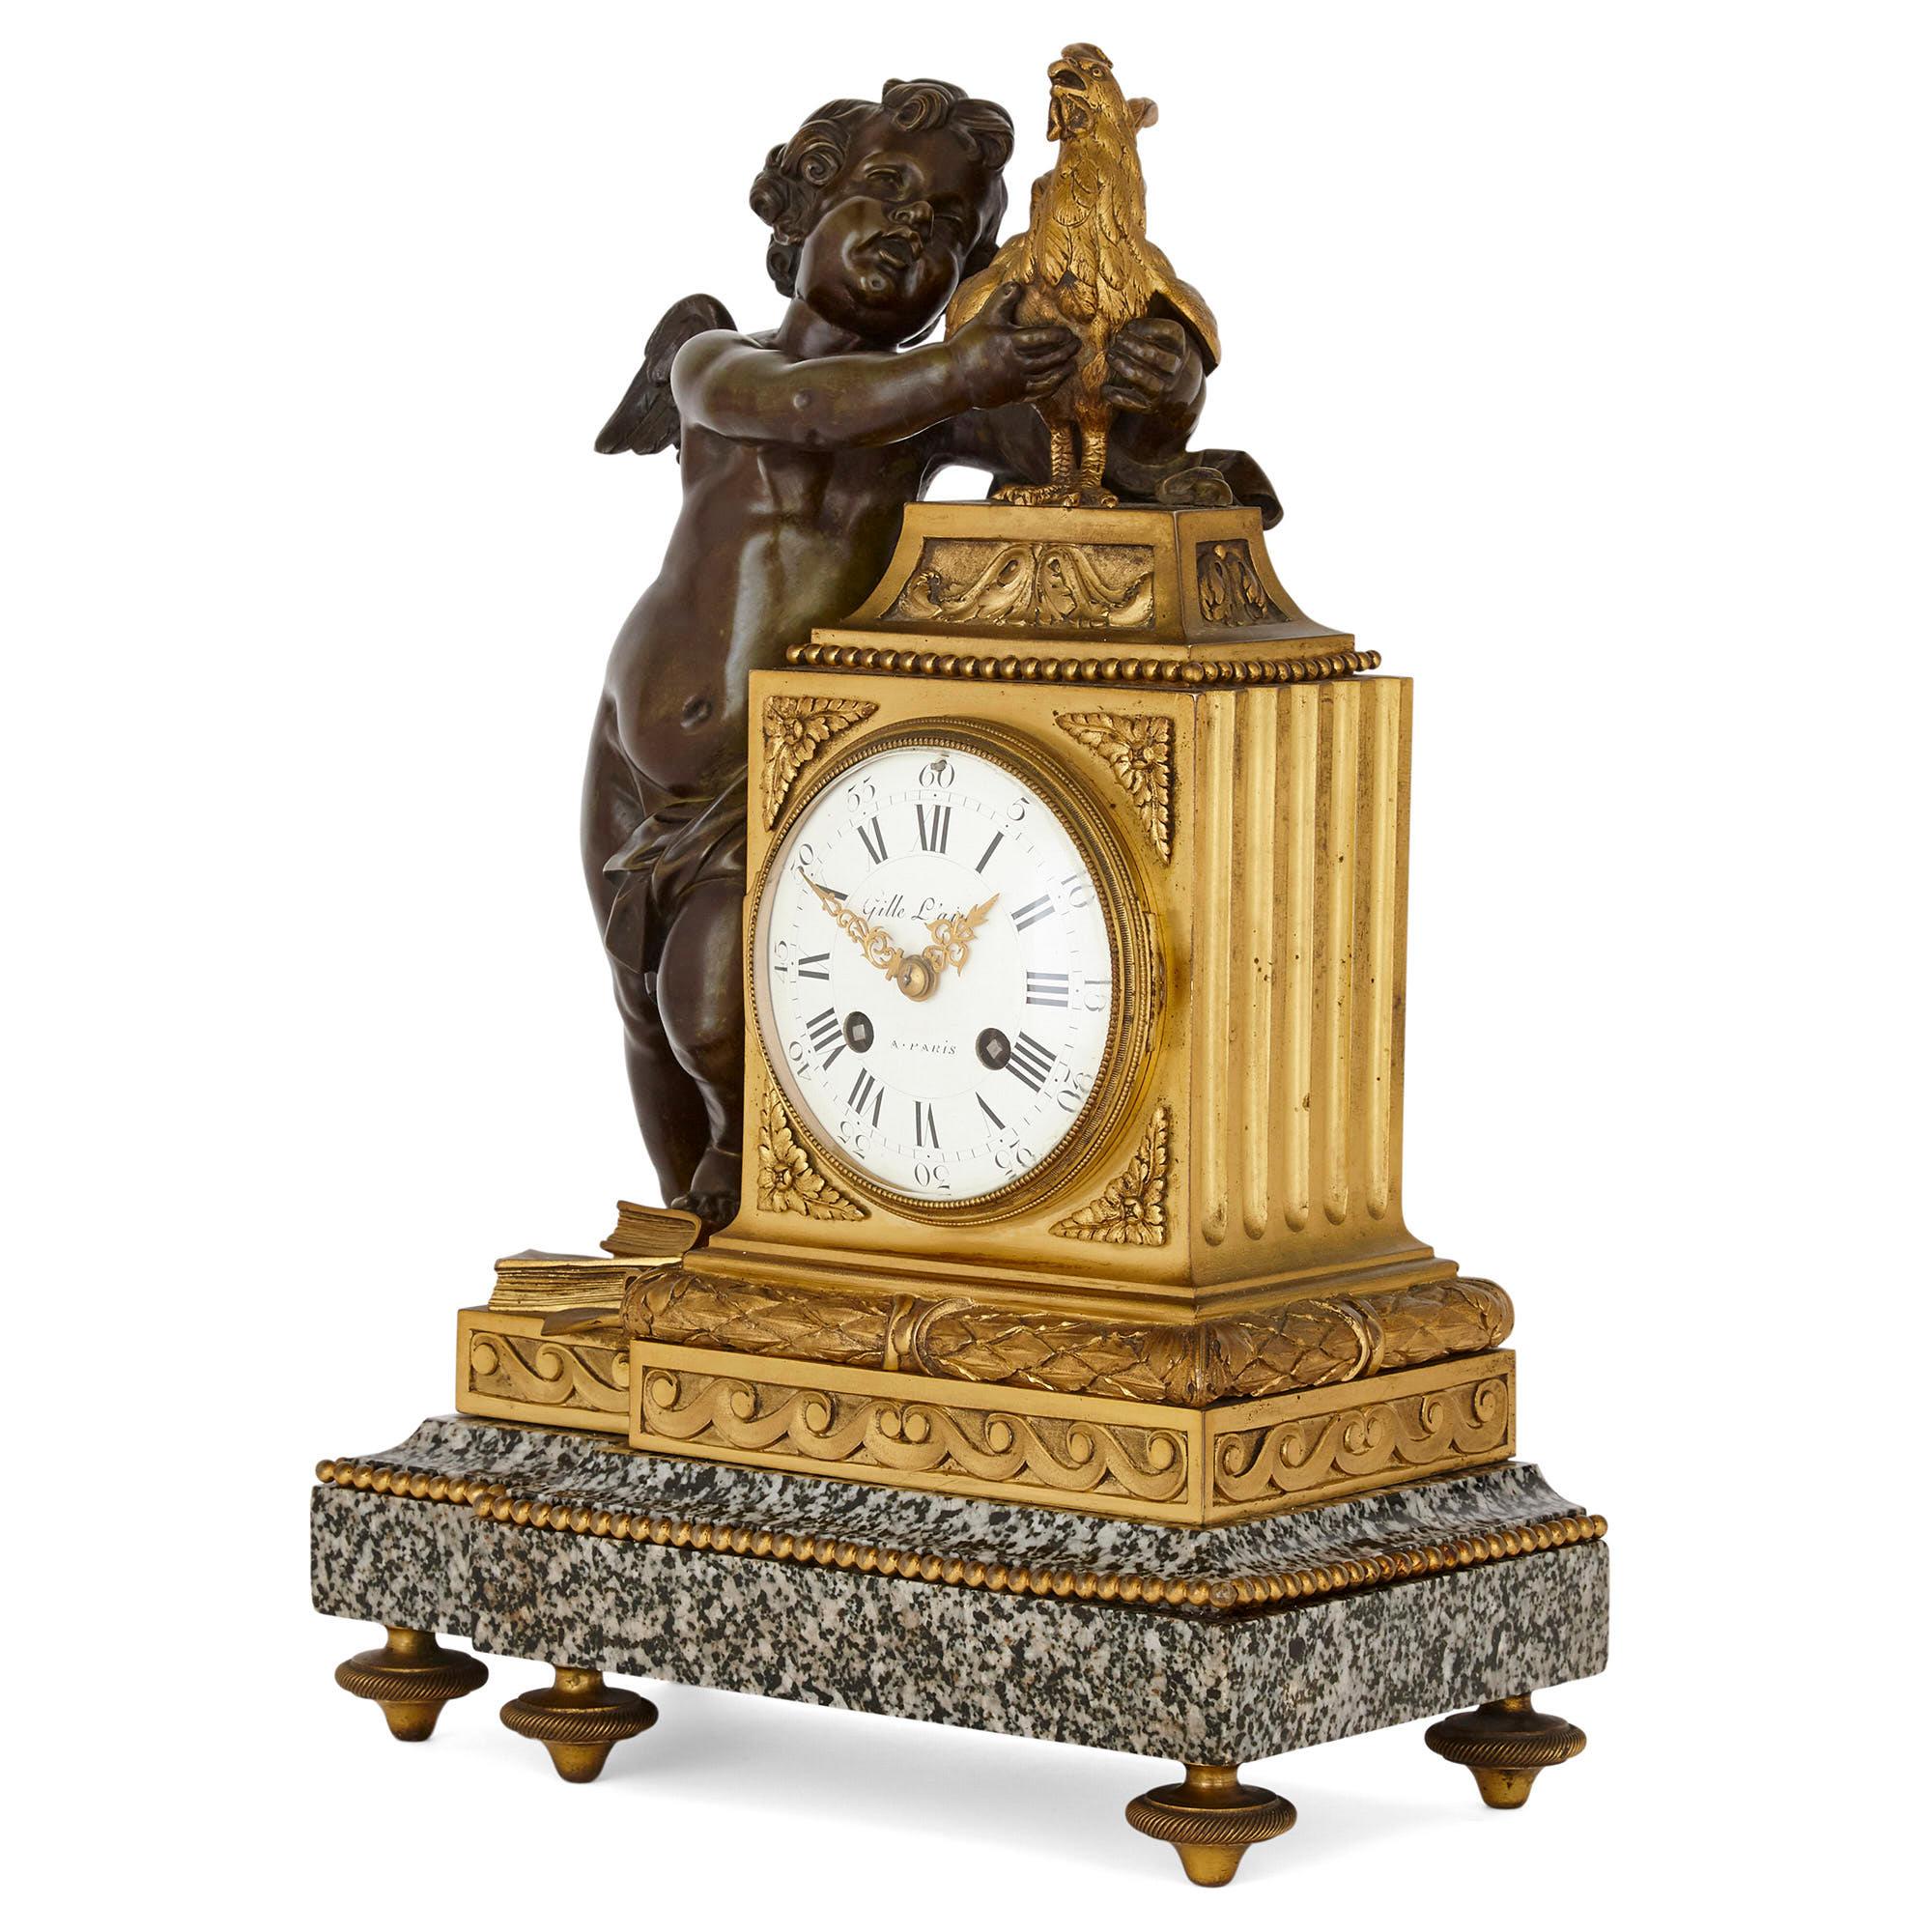 Diese französische Kaminsimsuhr im neoklassischen Stil ist aus patinierter und vergoldeter Bronze sowie aus schwarzem und grauem Marmor mit Flecken gefertigt. Der Uhrenkörper besteht aus einer schräg angebrachten Uhrentrommel aus vergoldeter Bronze,